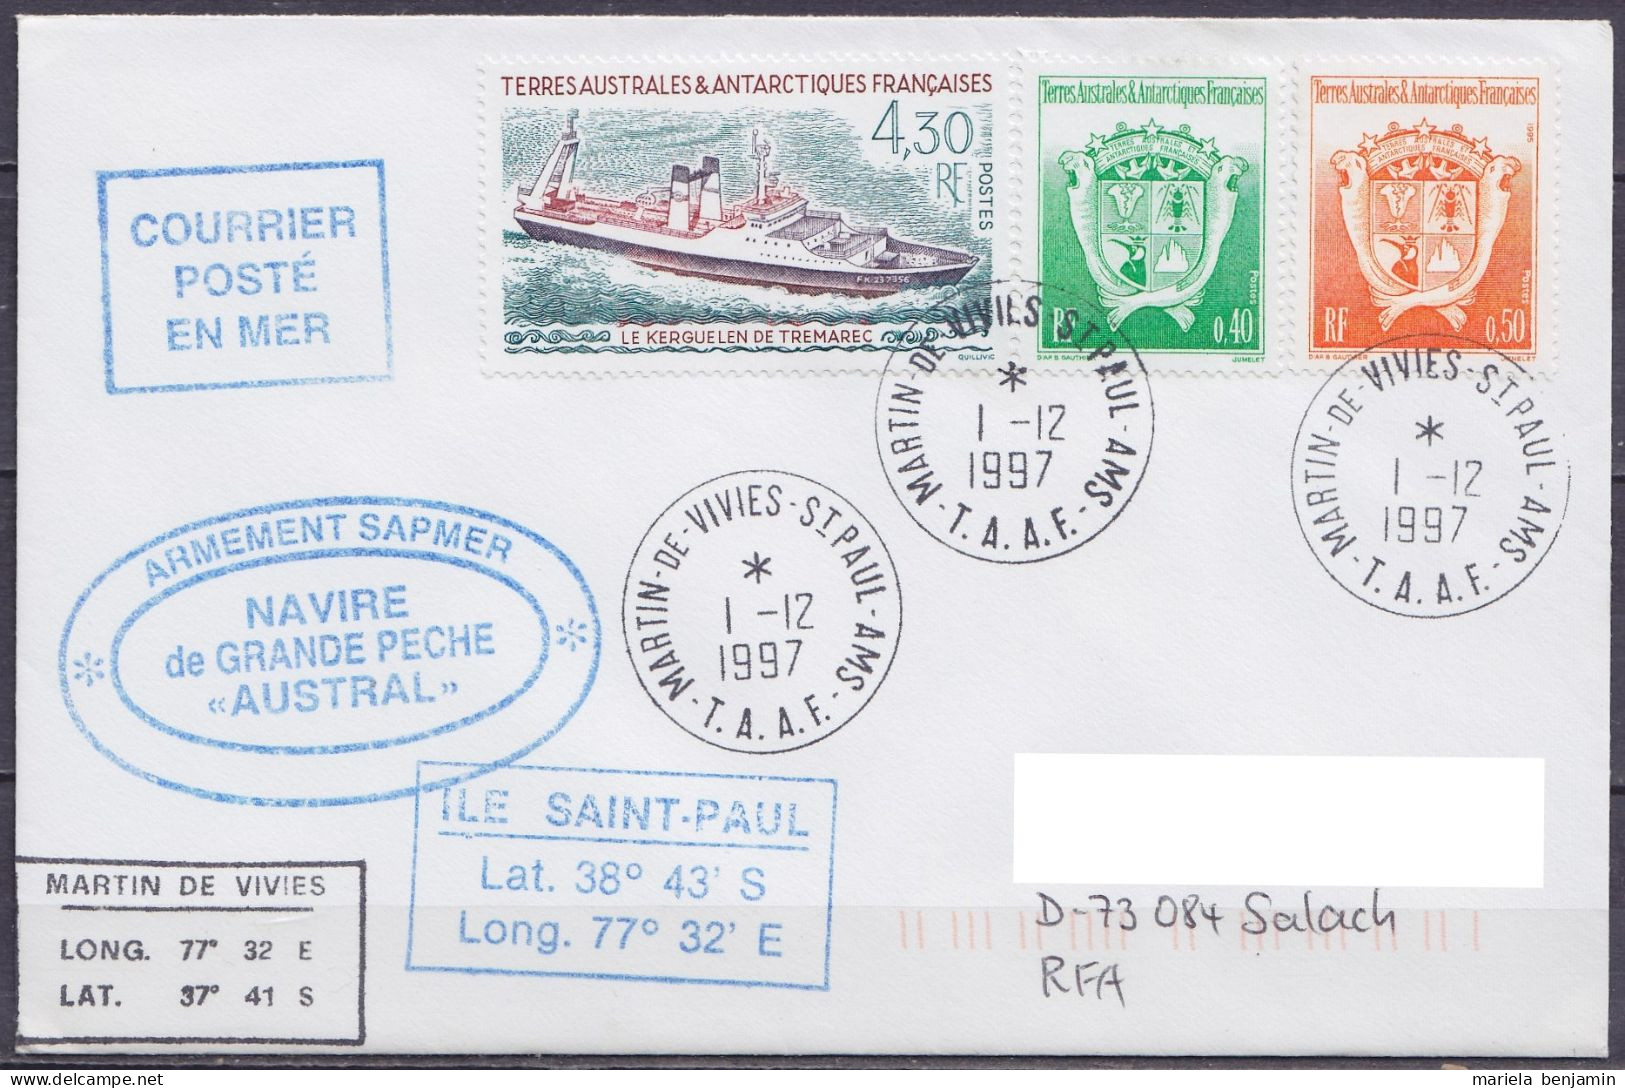 TAAF – St-Paul & Amsterdam - Cachets Bateau Chalutier AUSTRAL - Oblit. Martin-de-Viviès 1-12-1997 - Briefe U. Dokumente